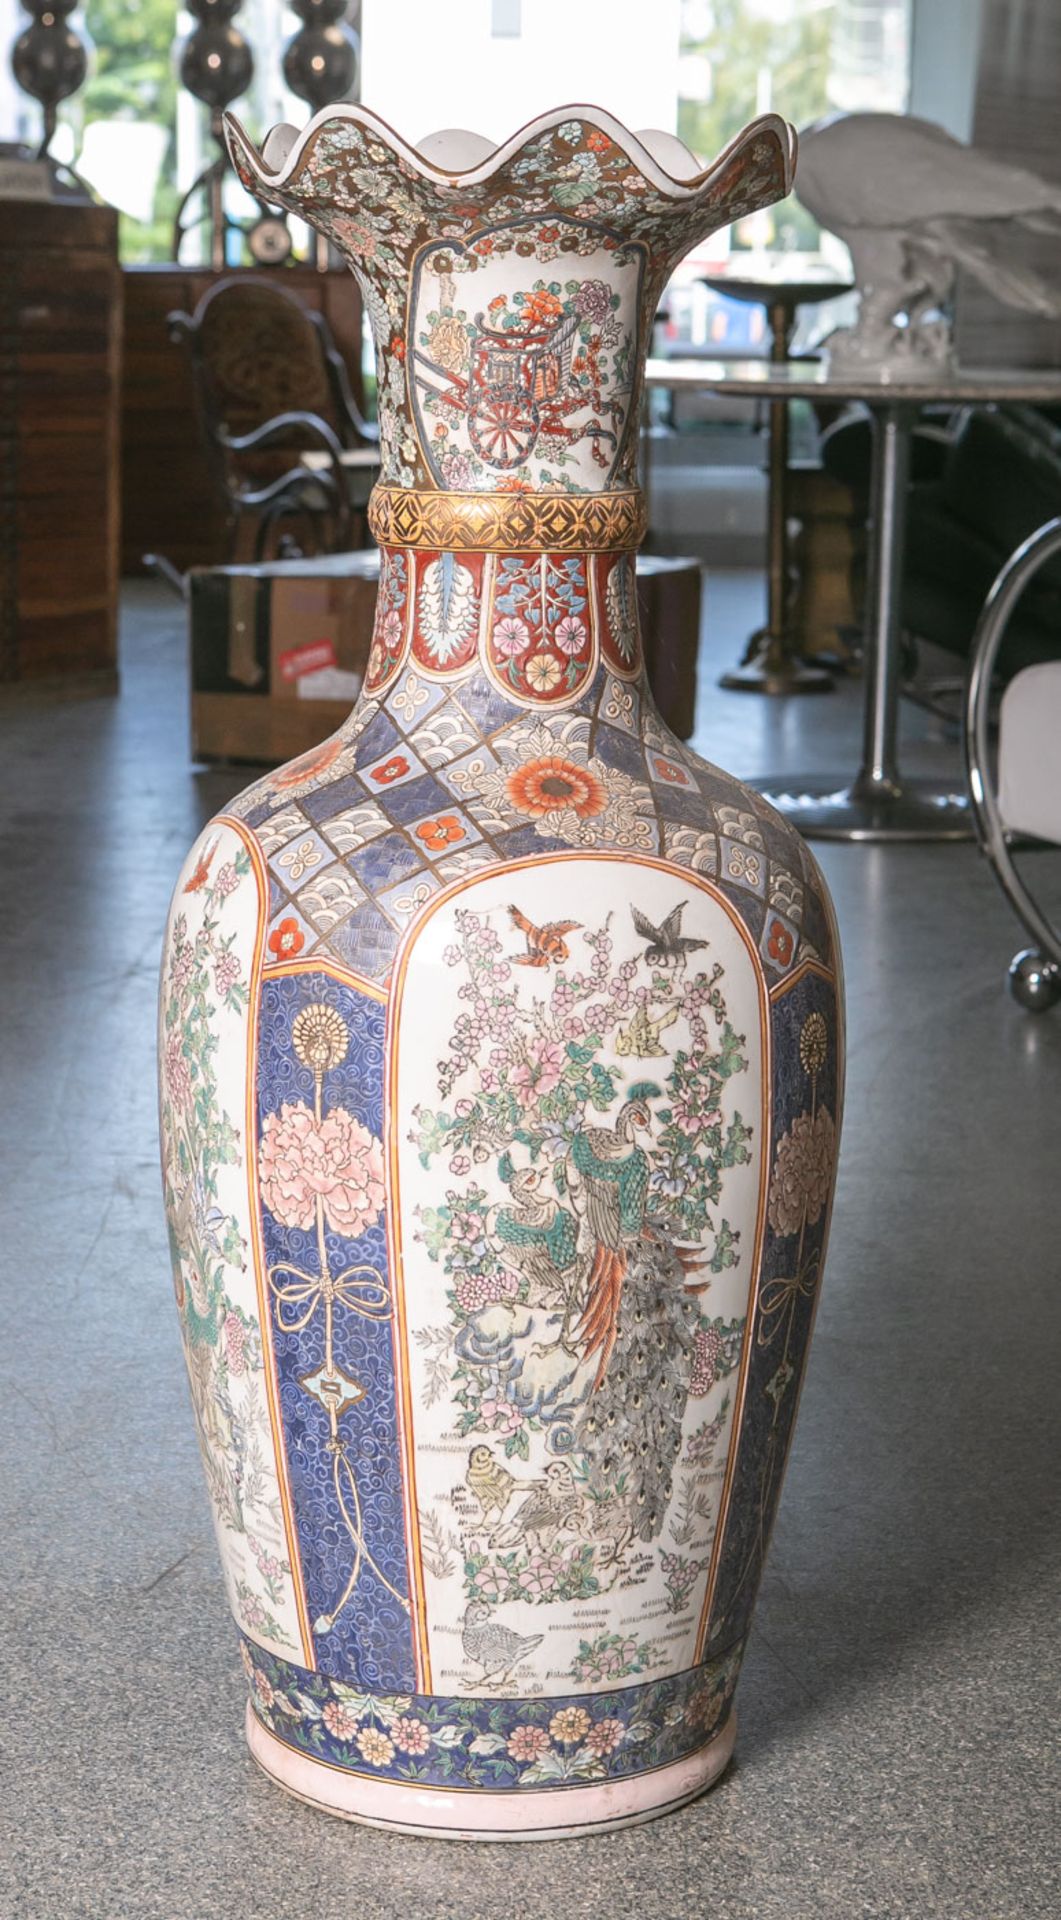 Große Bodenvase aus Porzellan (China, Alter unbekannt), farbig staffiert mit Blumen-